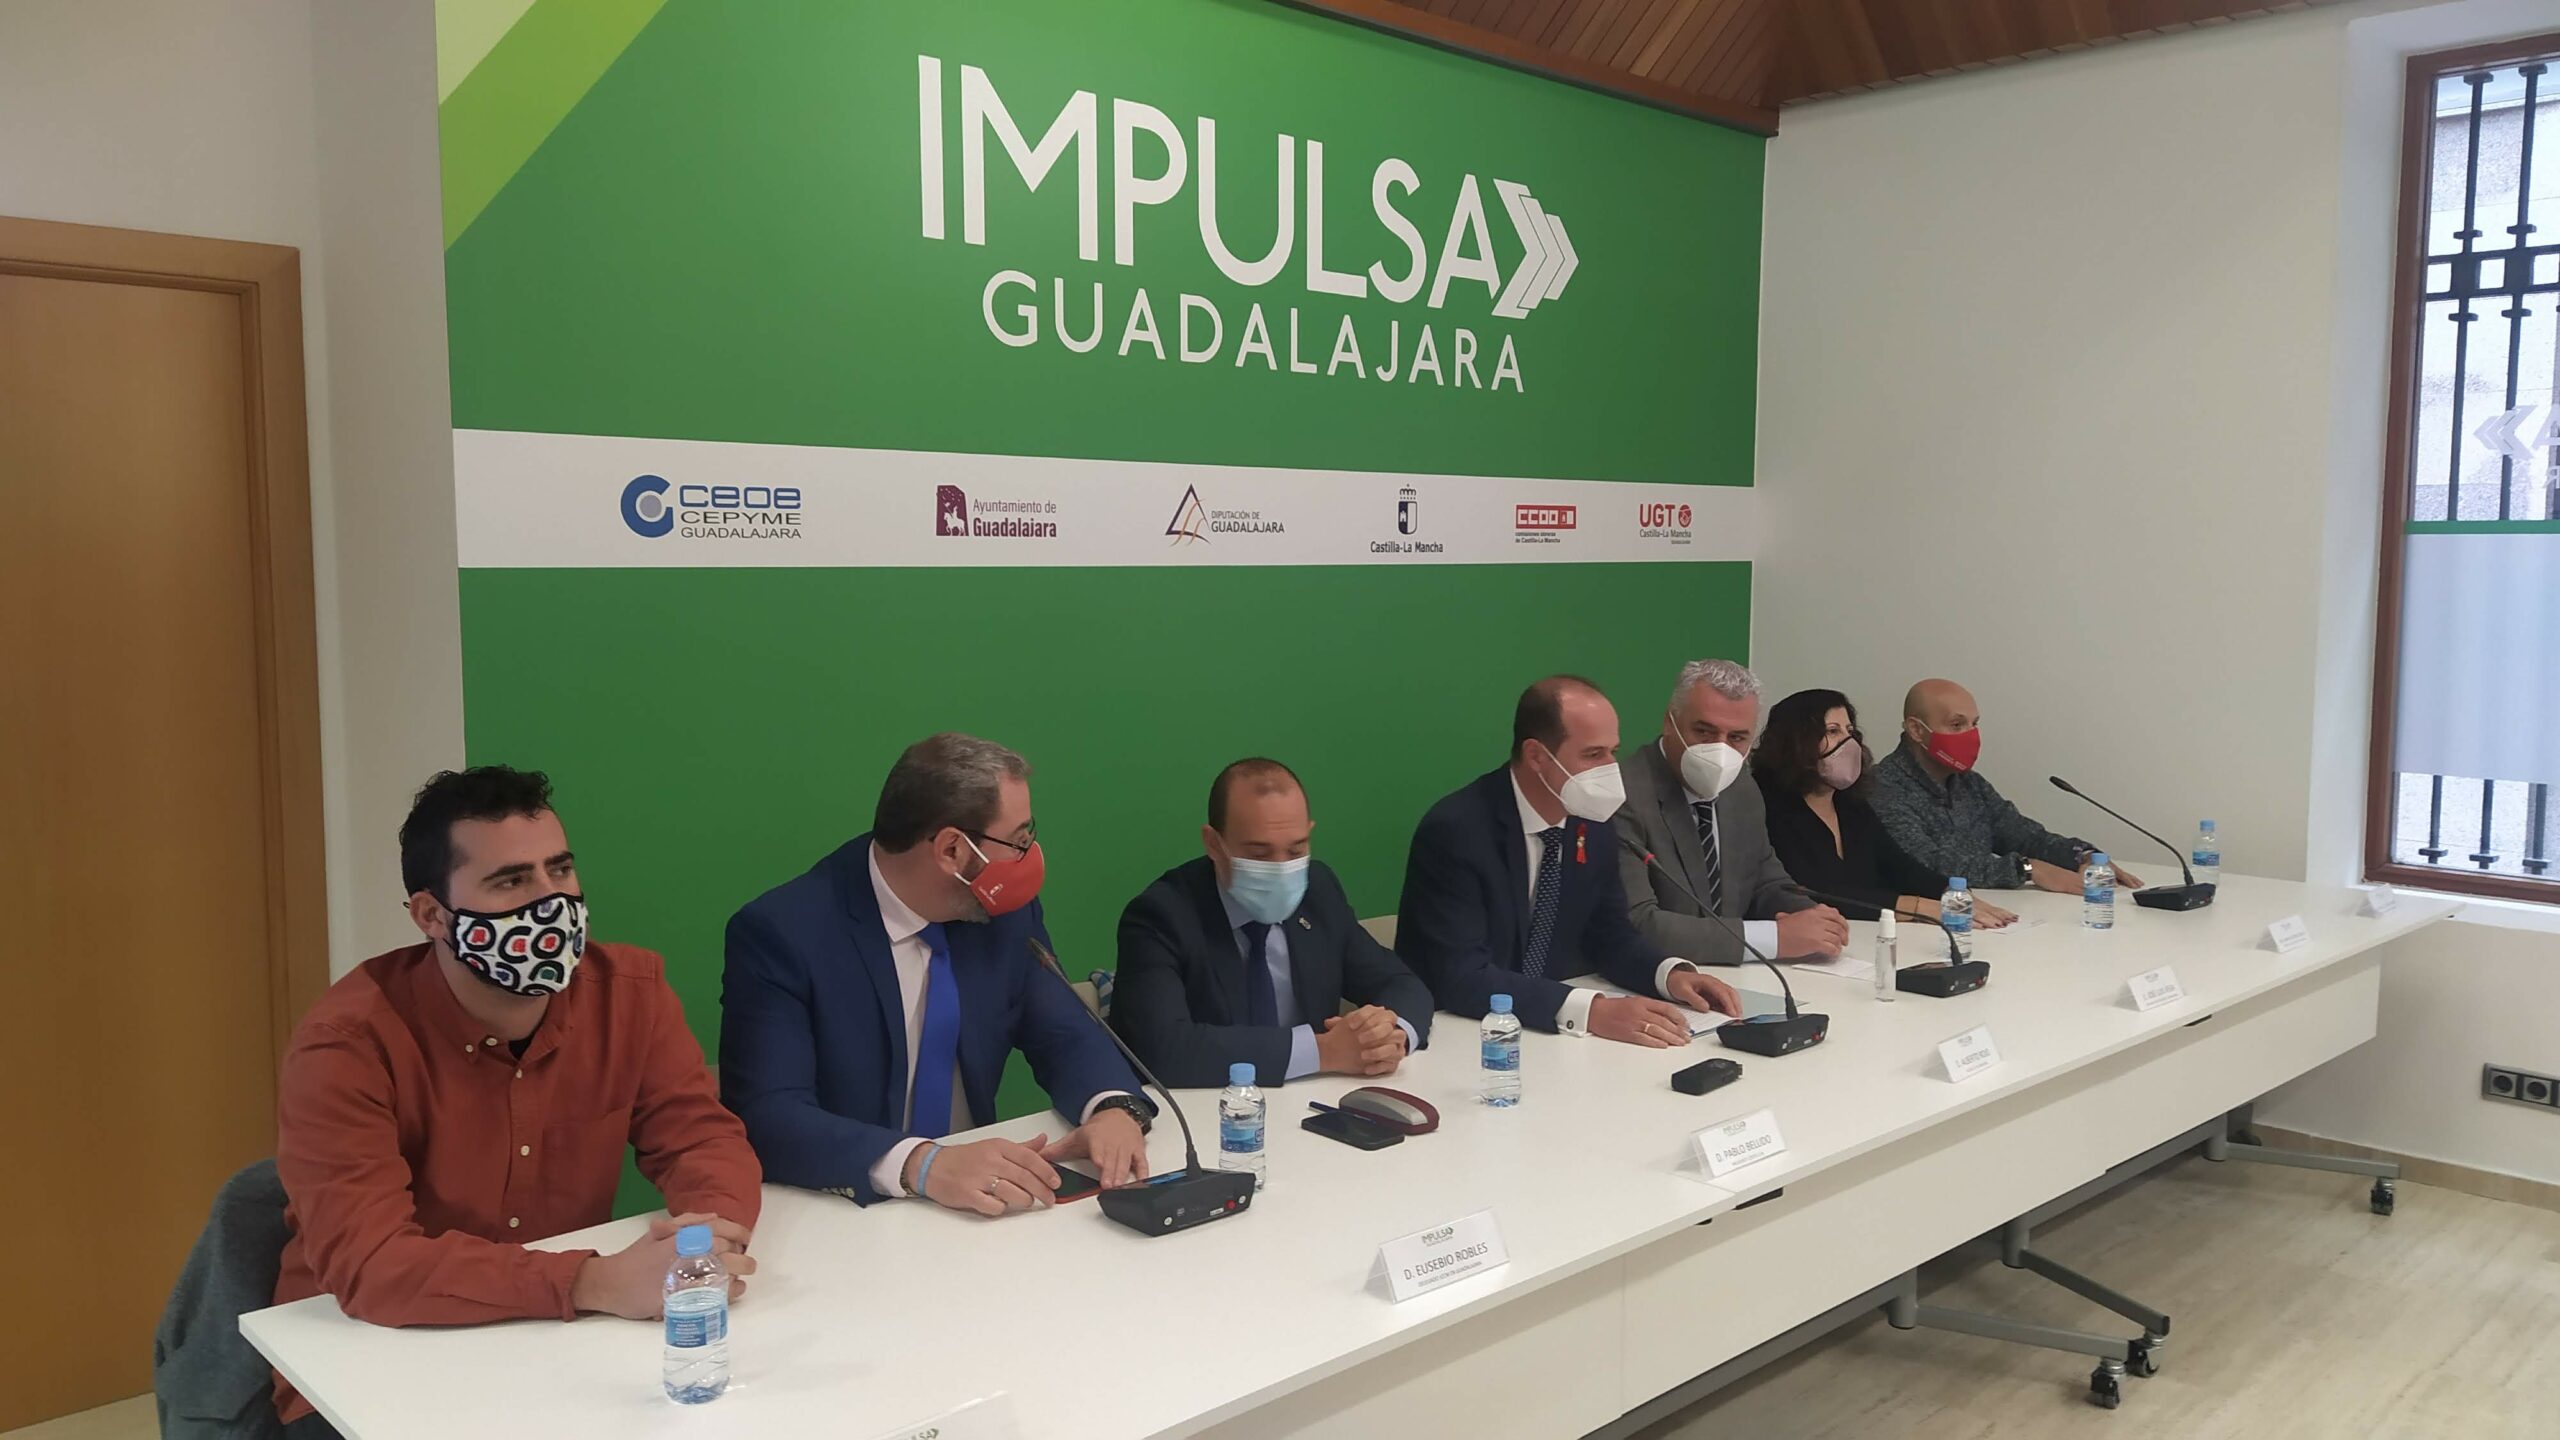 Inauguración del local de "Impulsa Guadalajara" el 1 de diciembre de 2021. (Foto: La Crónic@)